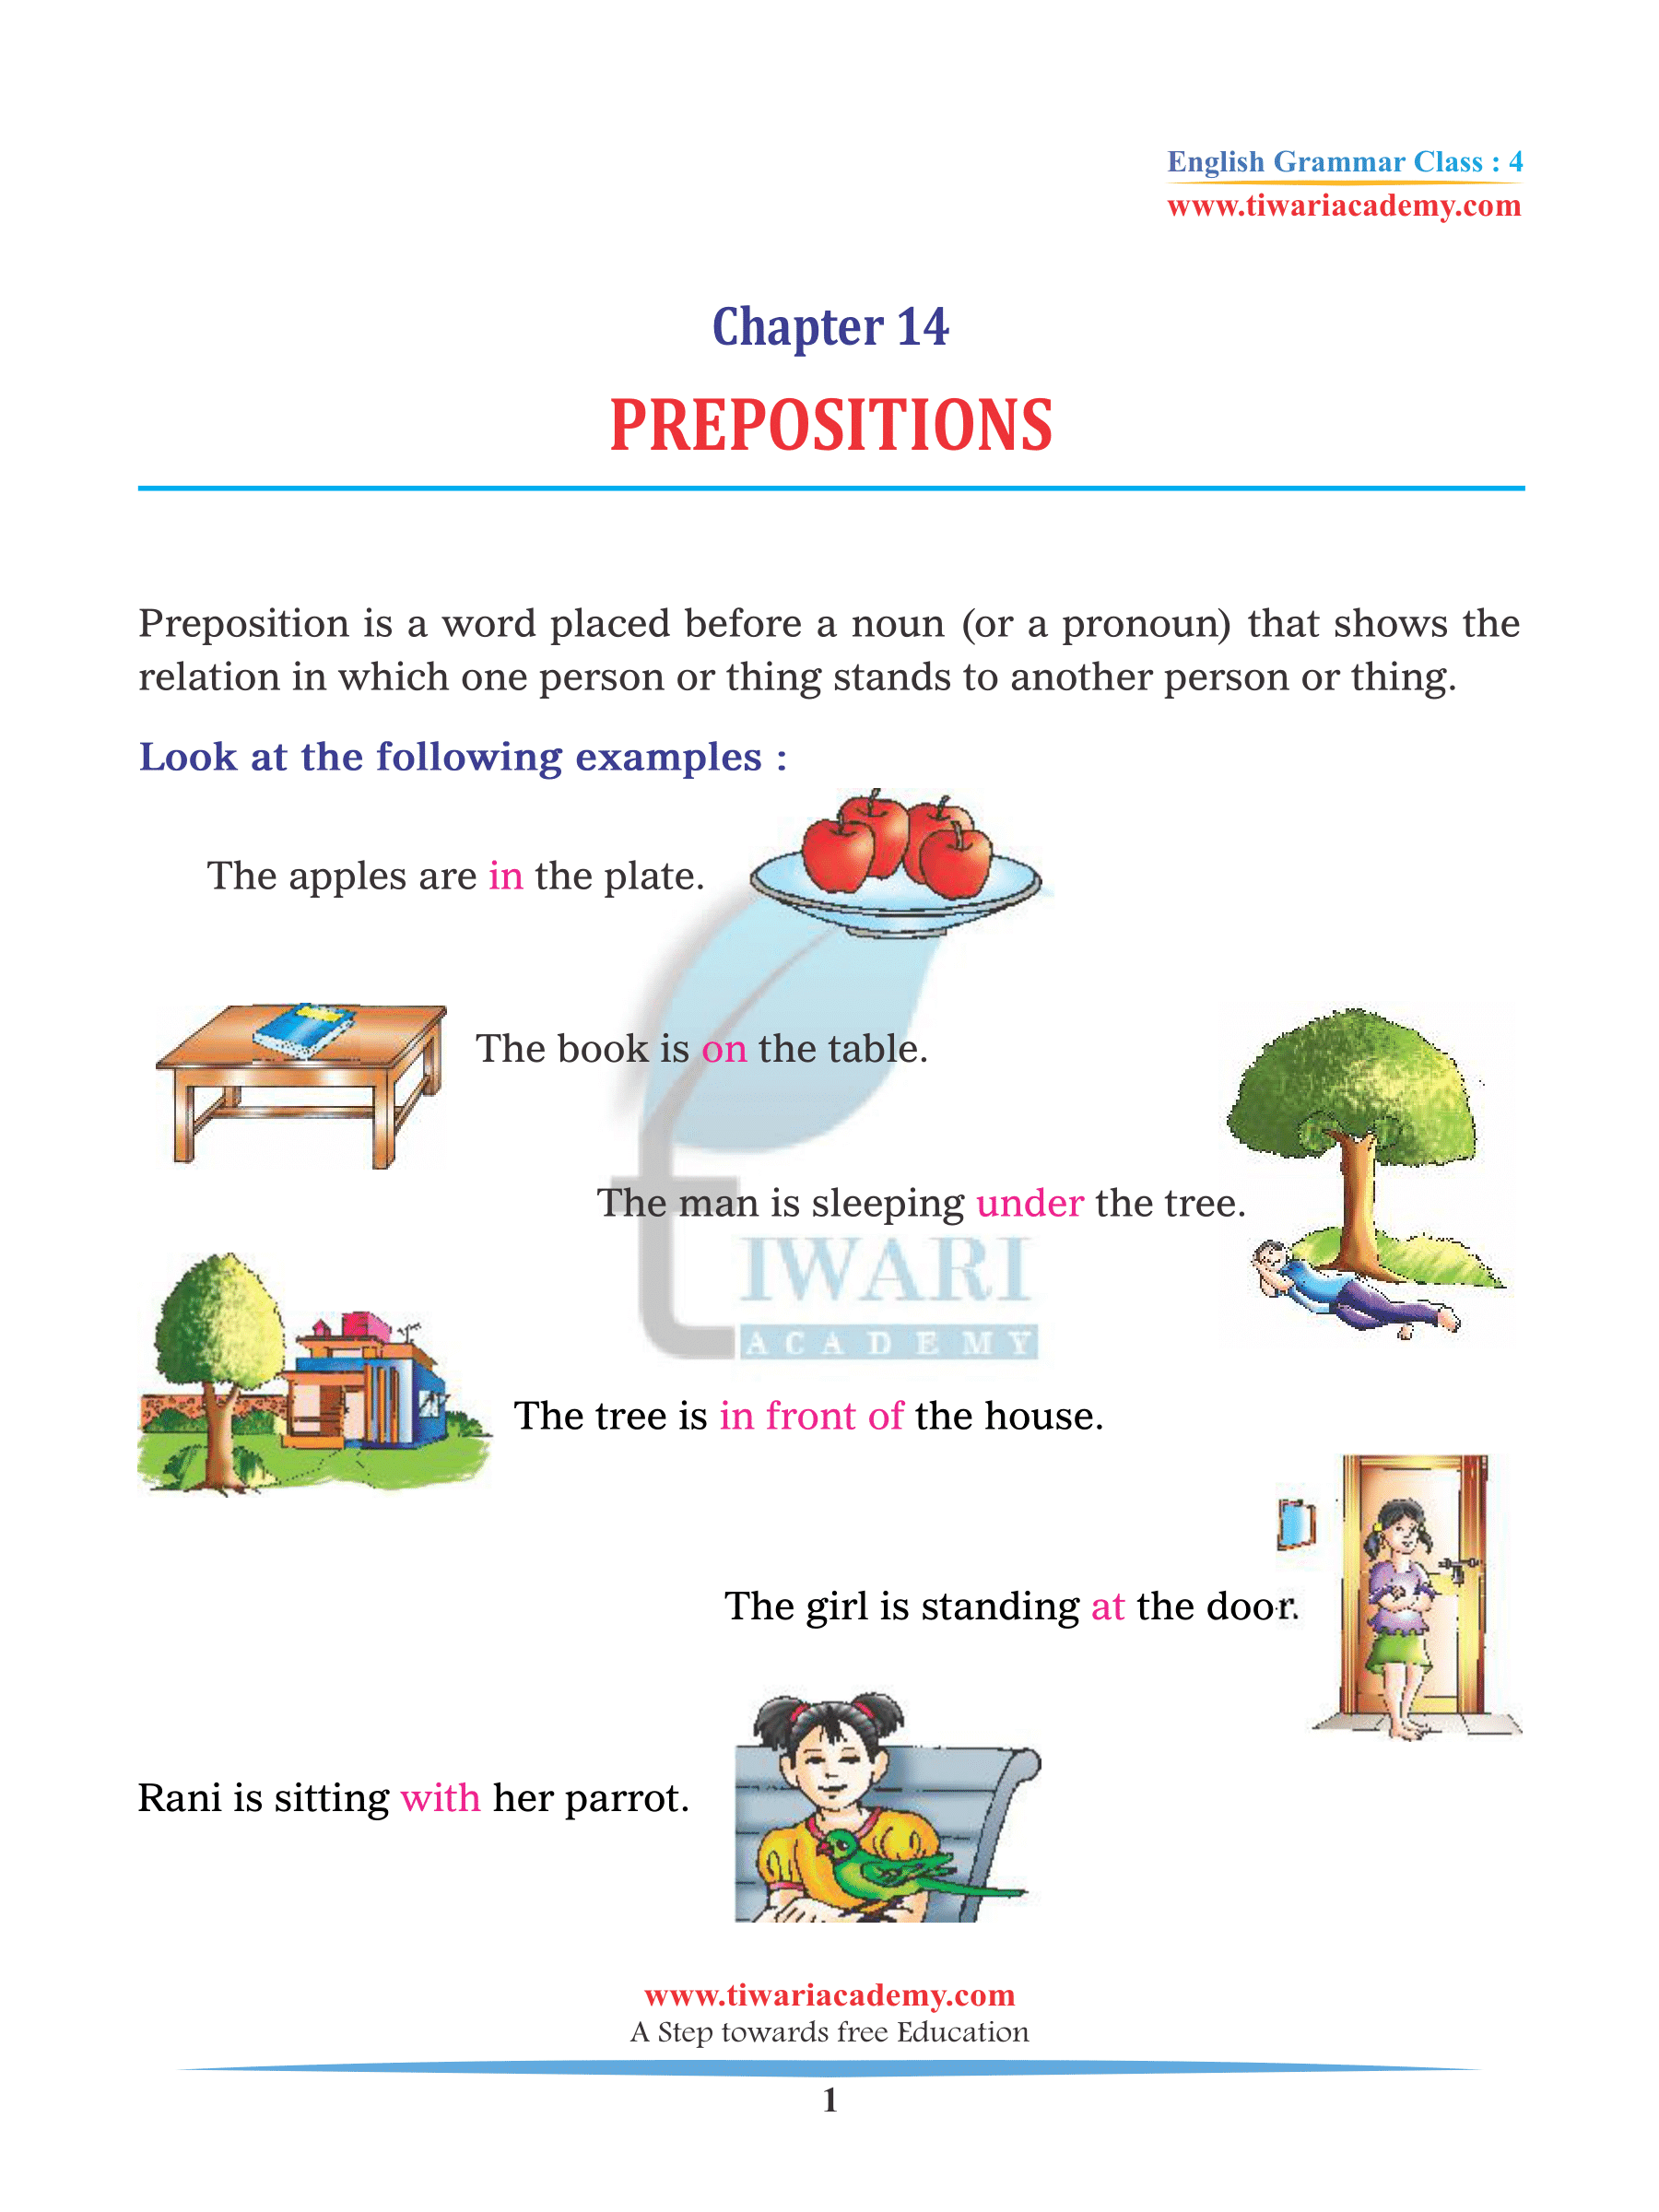 Class 4 English Grammar Chapter 14 Prepositions